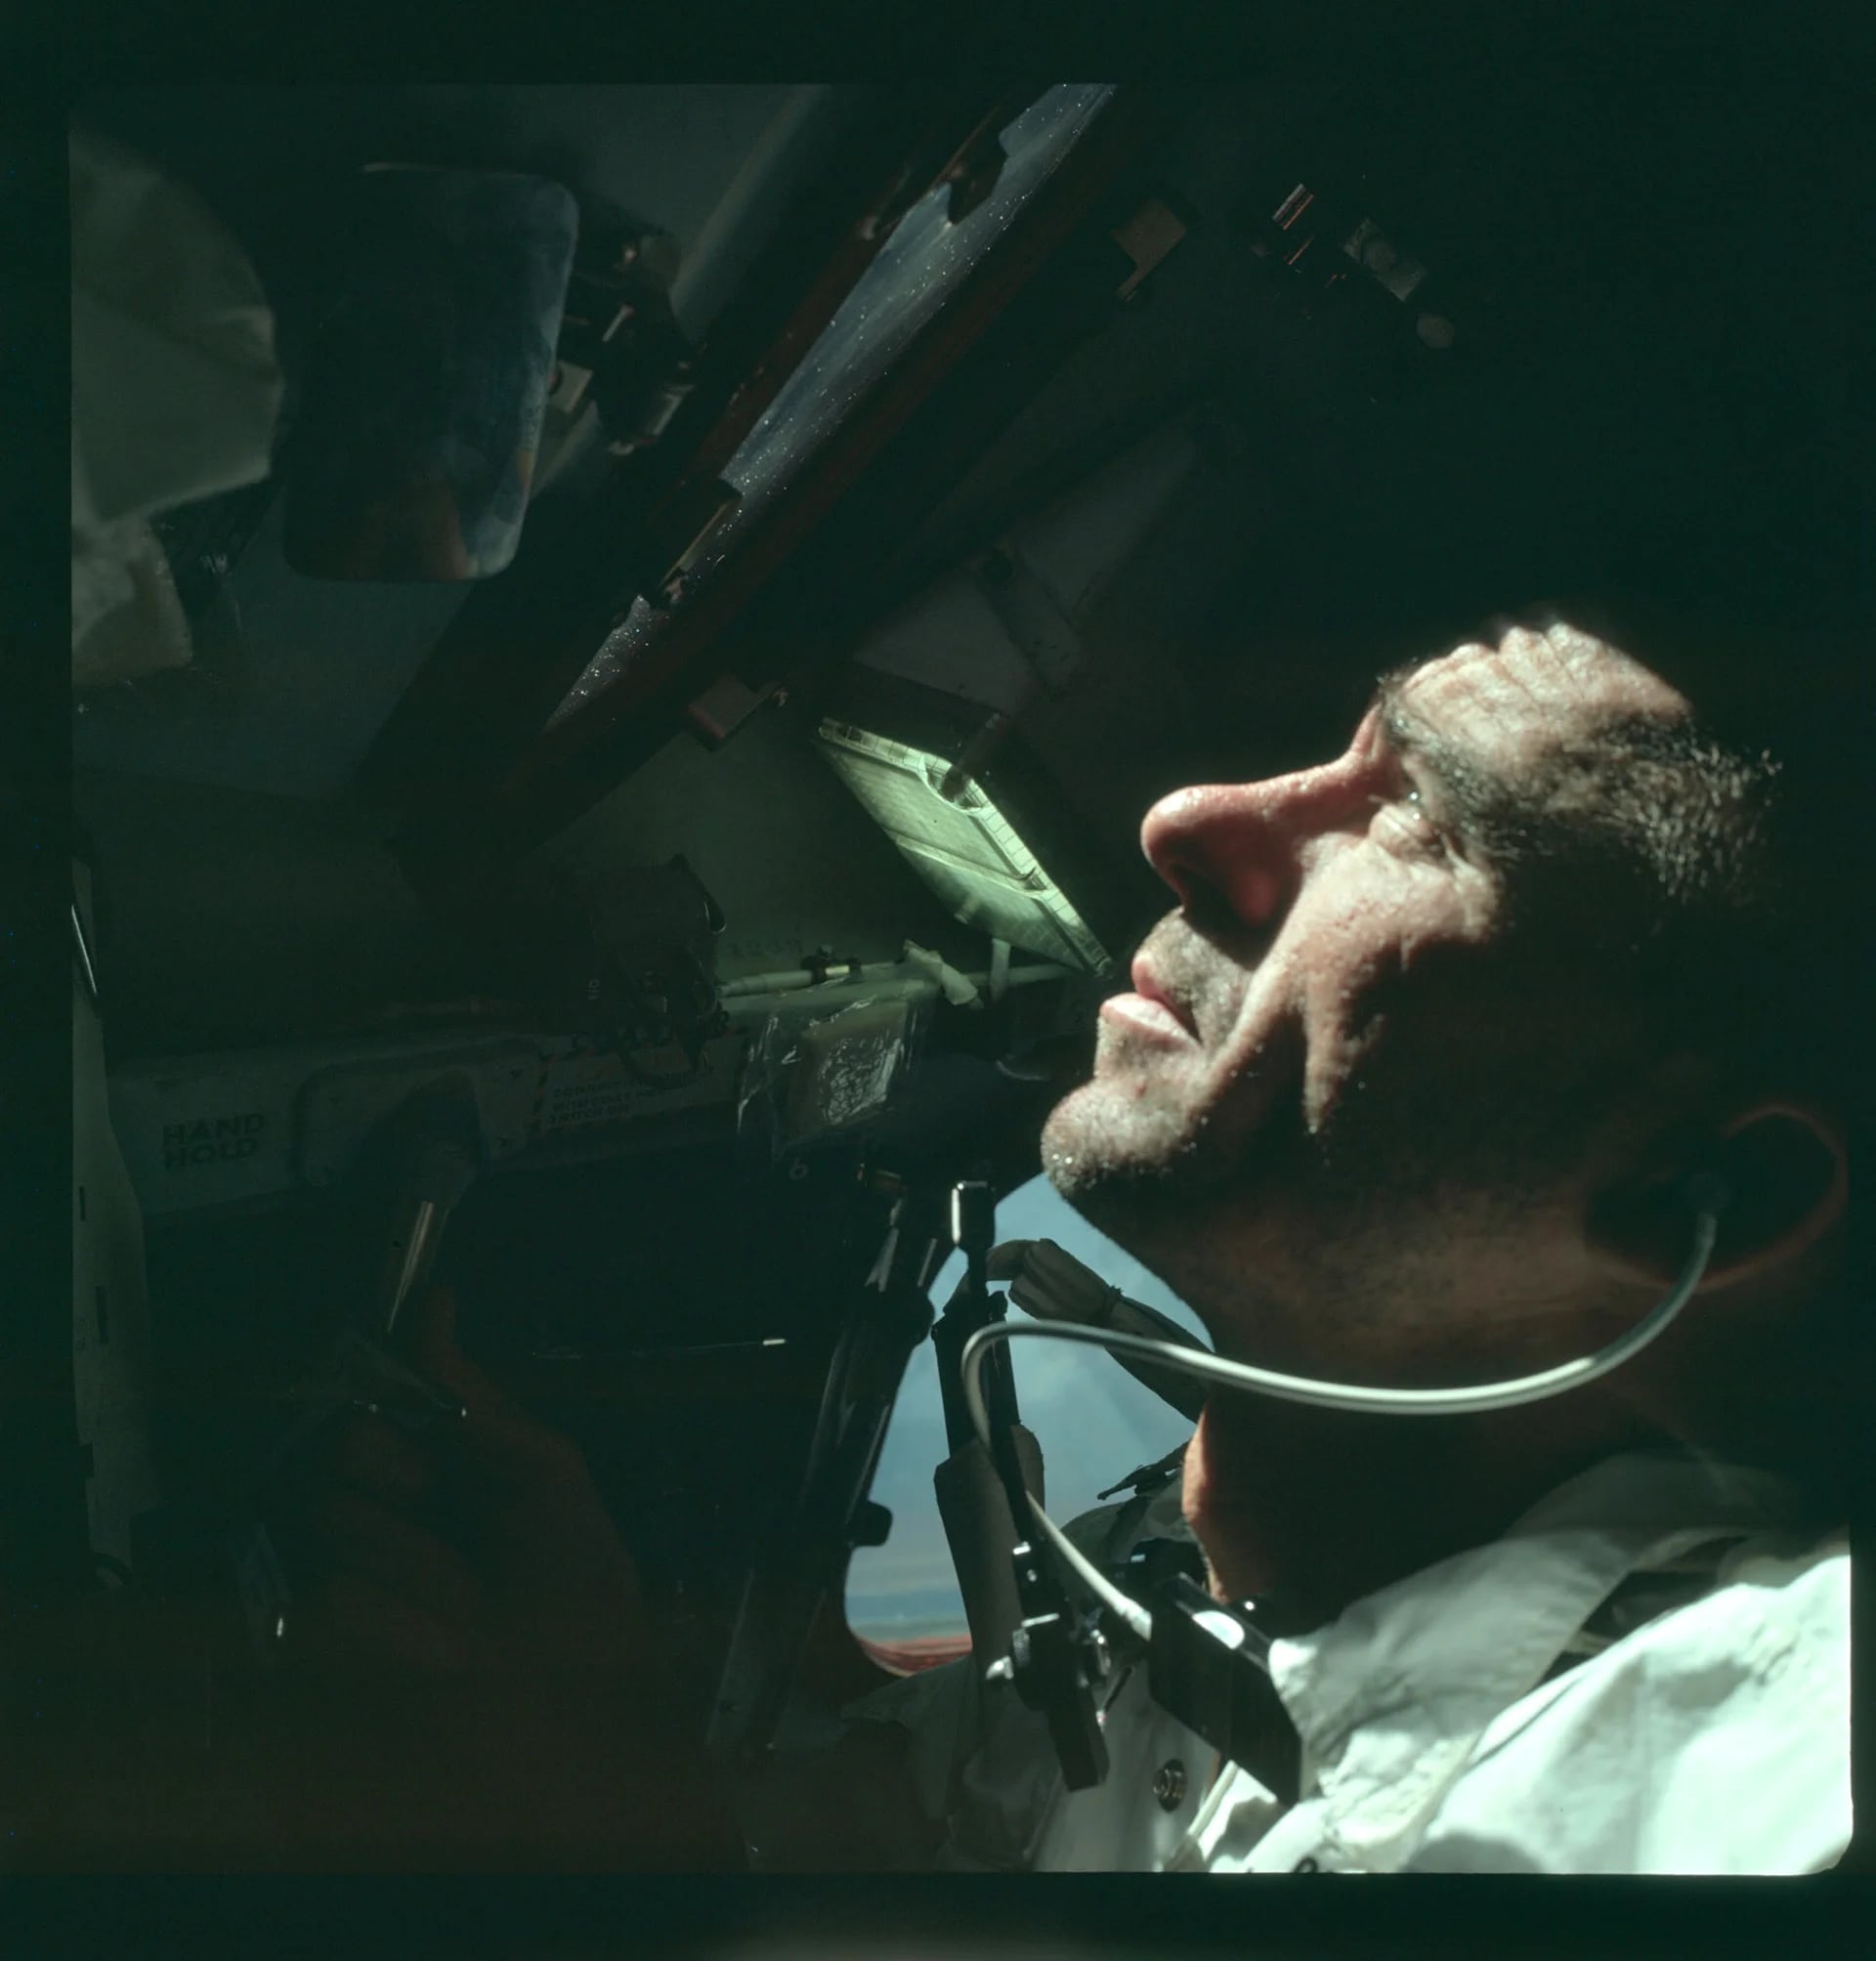 El astronauta Walter Cunningham, piloto del módulo lunar, es fotografiado durante la misión Apollo 7 en octubre de 1968 (Reuters)